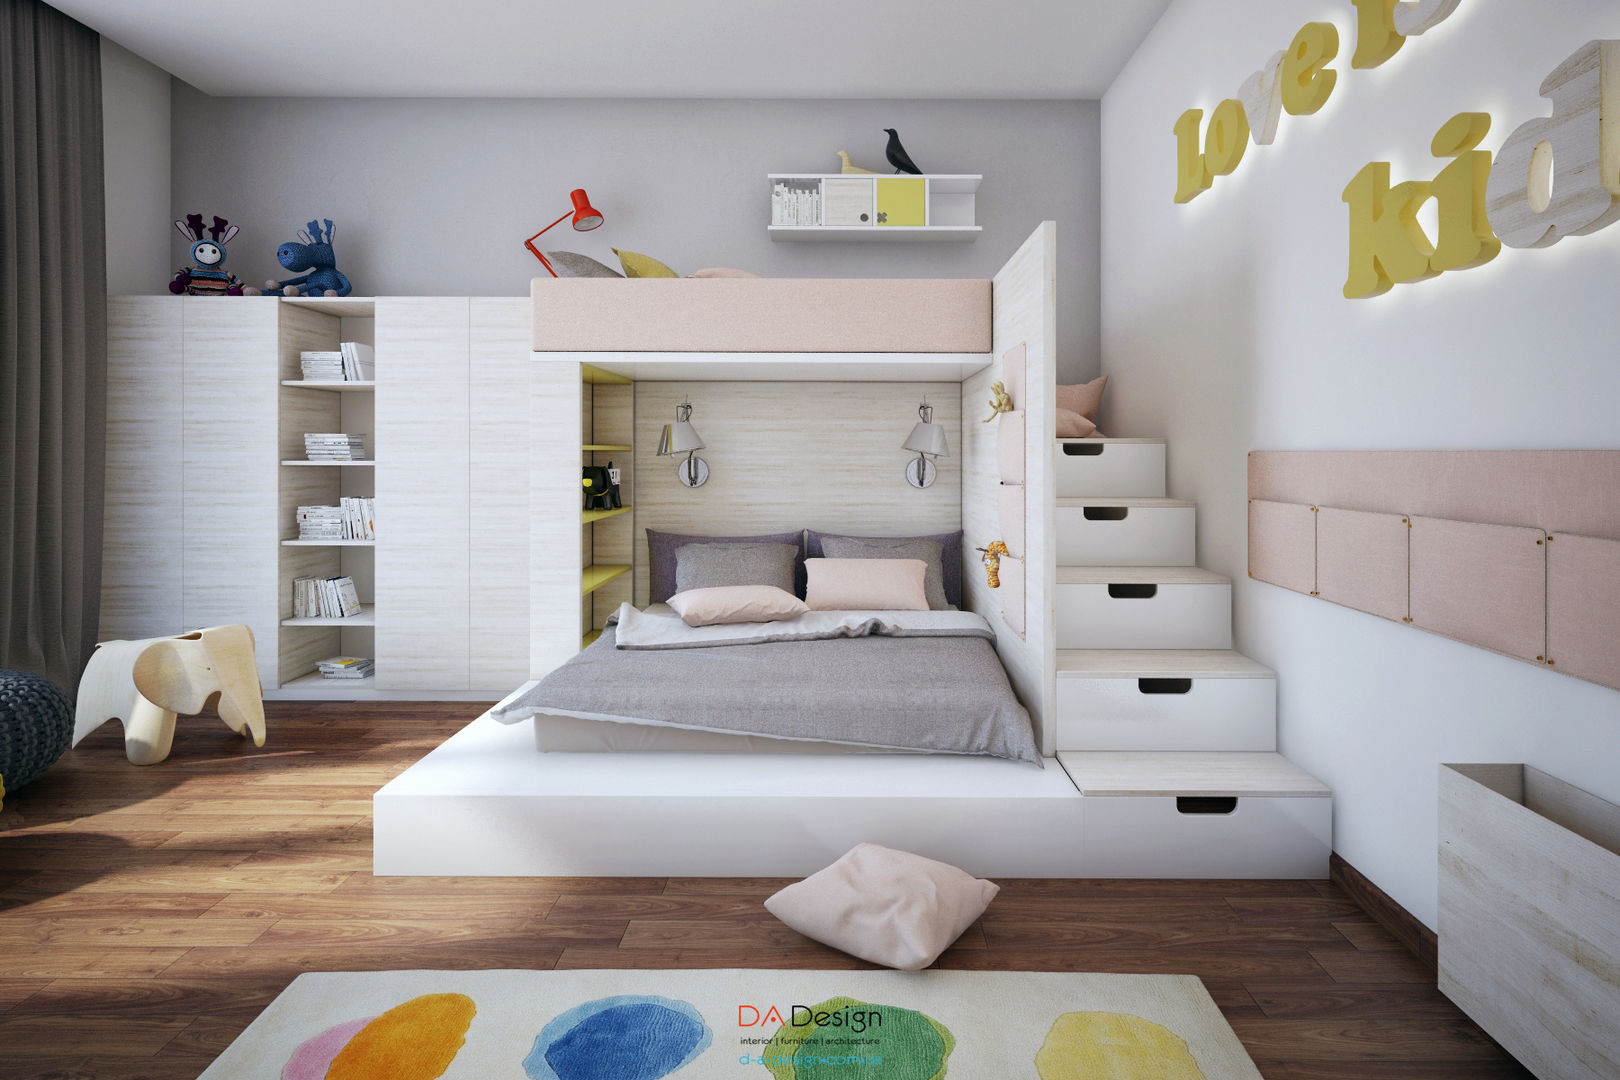 Suburban residential, DA-Design DA-Design غرفة الاطفال